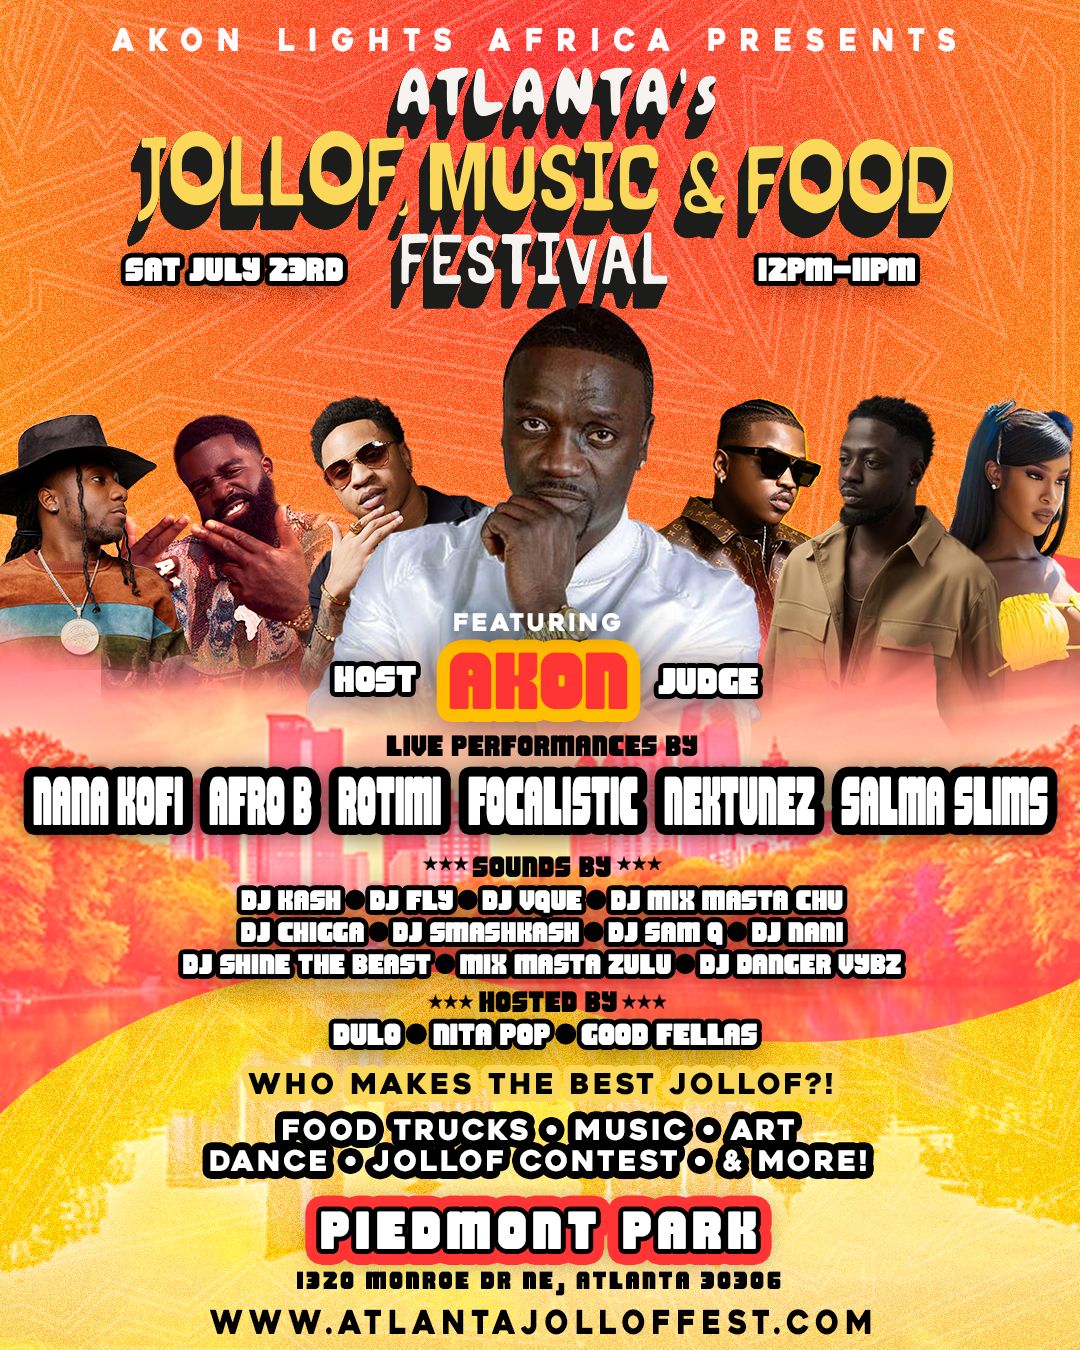 Buy Tickets to Atlanta Jollof, Music & Food Festival in Atlanta on Jul